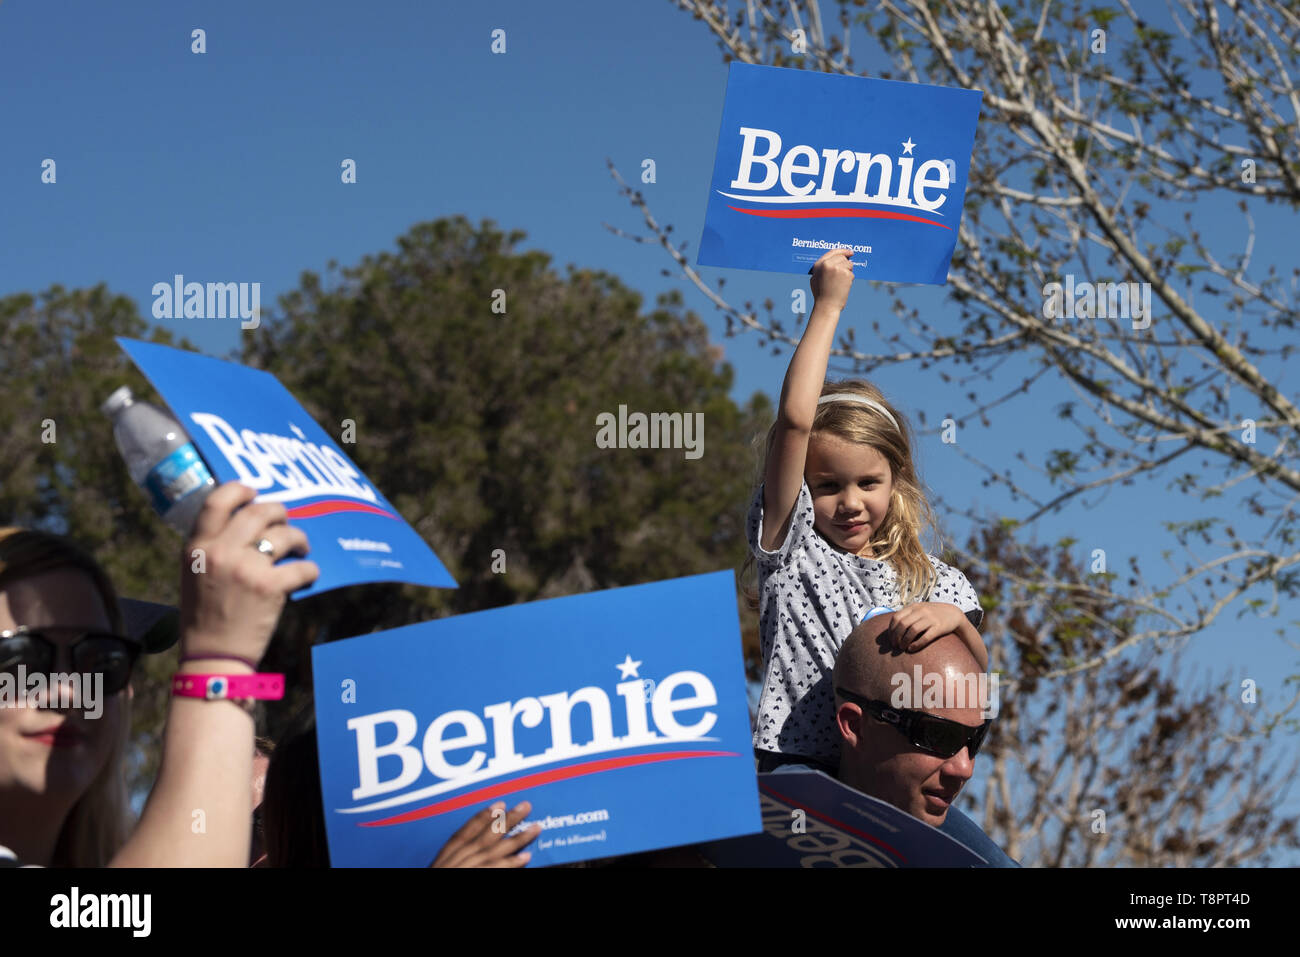 Henderson, Nevada, USA. Mar 16, 2019. Un enfant vu holding a placard qui dit Bernie durant la campagne rassemblement à Henderson. Ronen Crédit : Tivony SOPA/Images/ZUMA/Alamy Fil Live News Banque D'Images